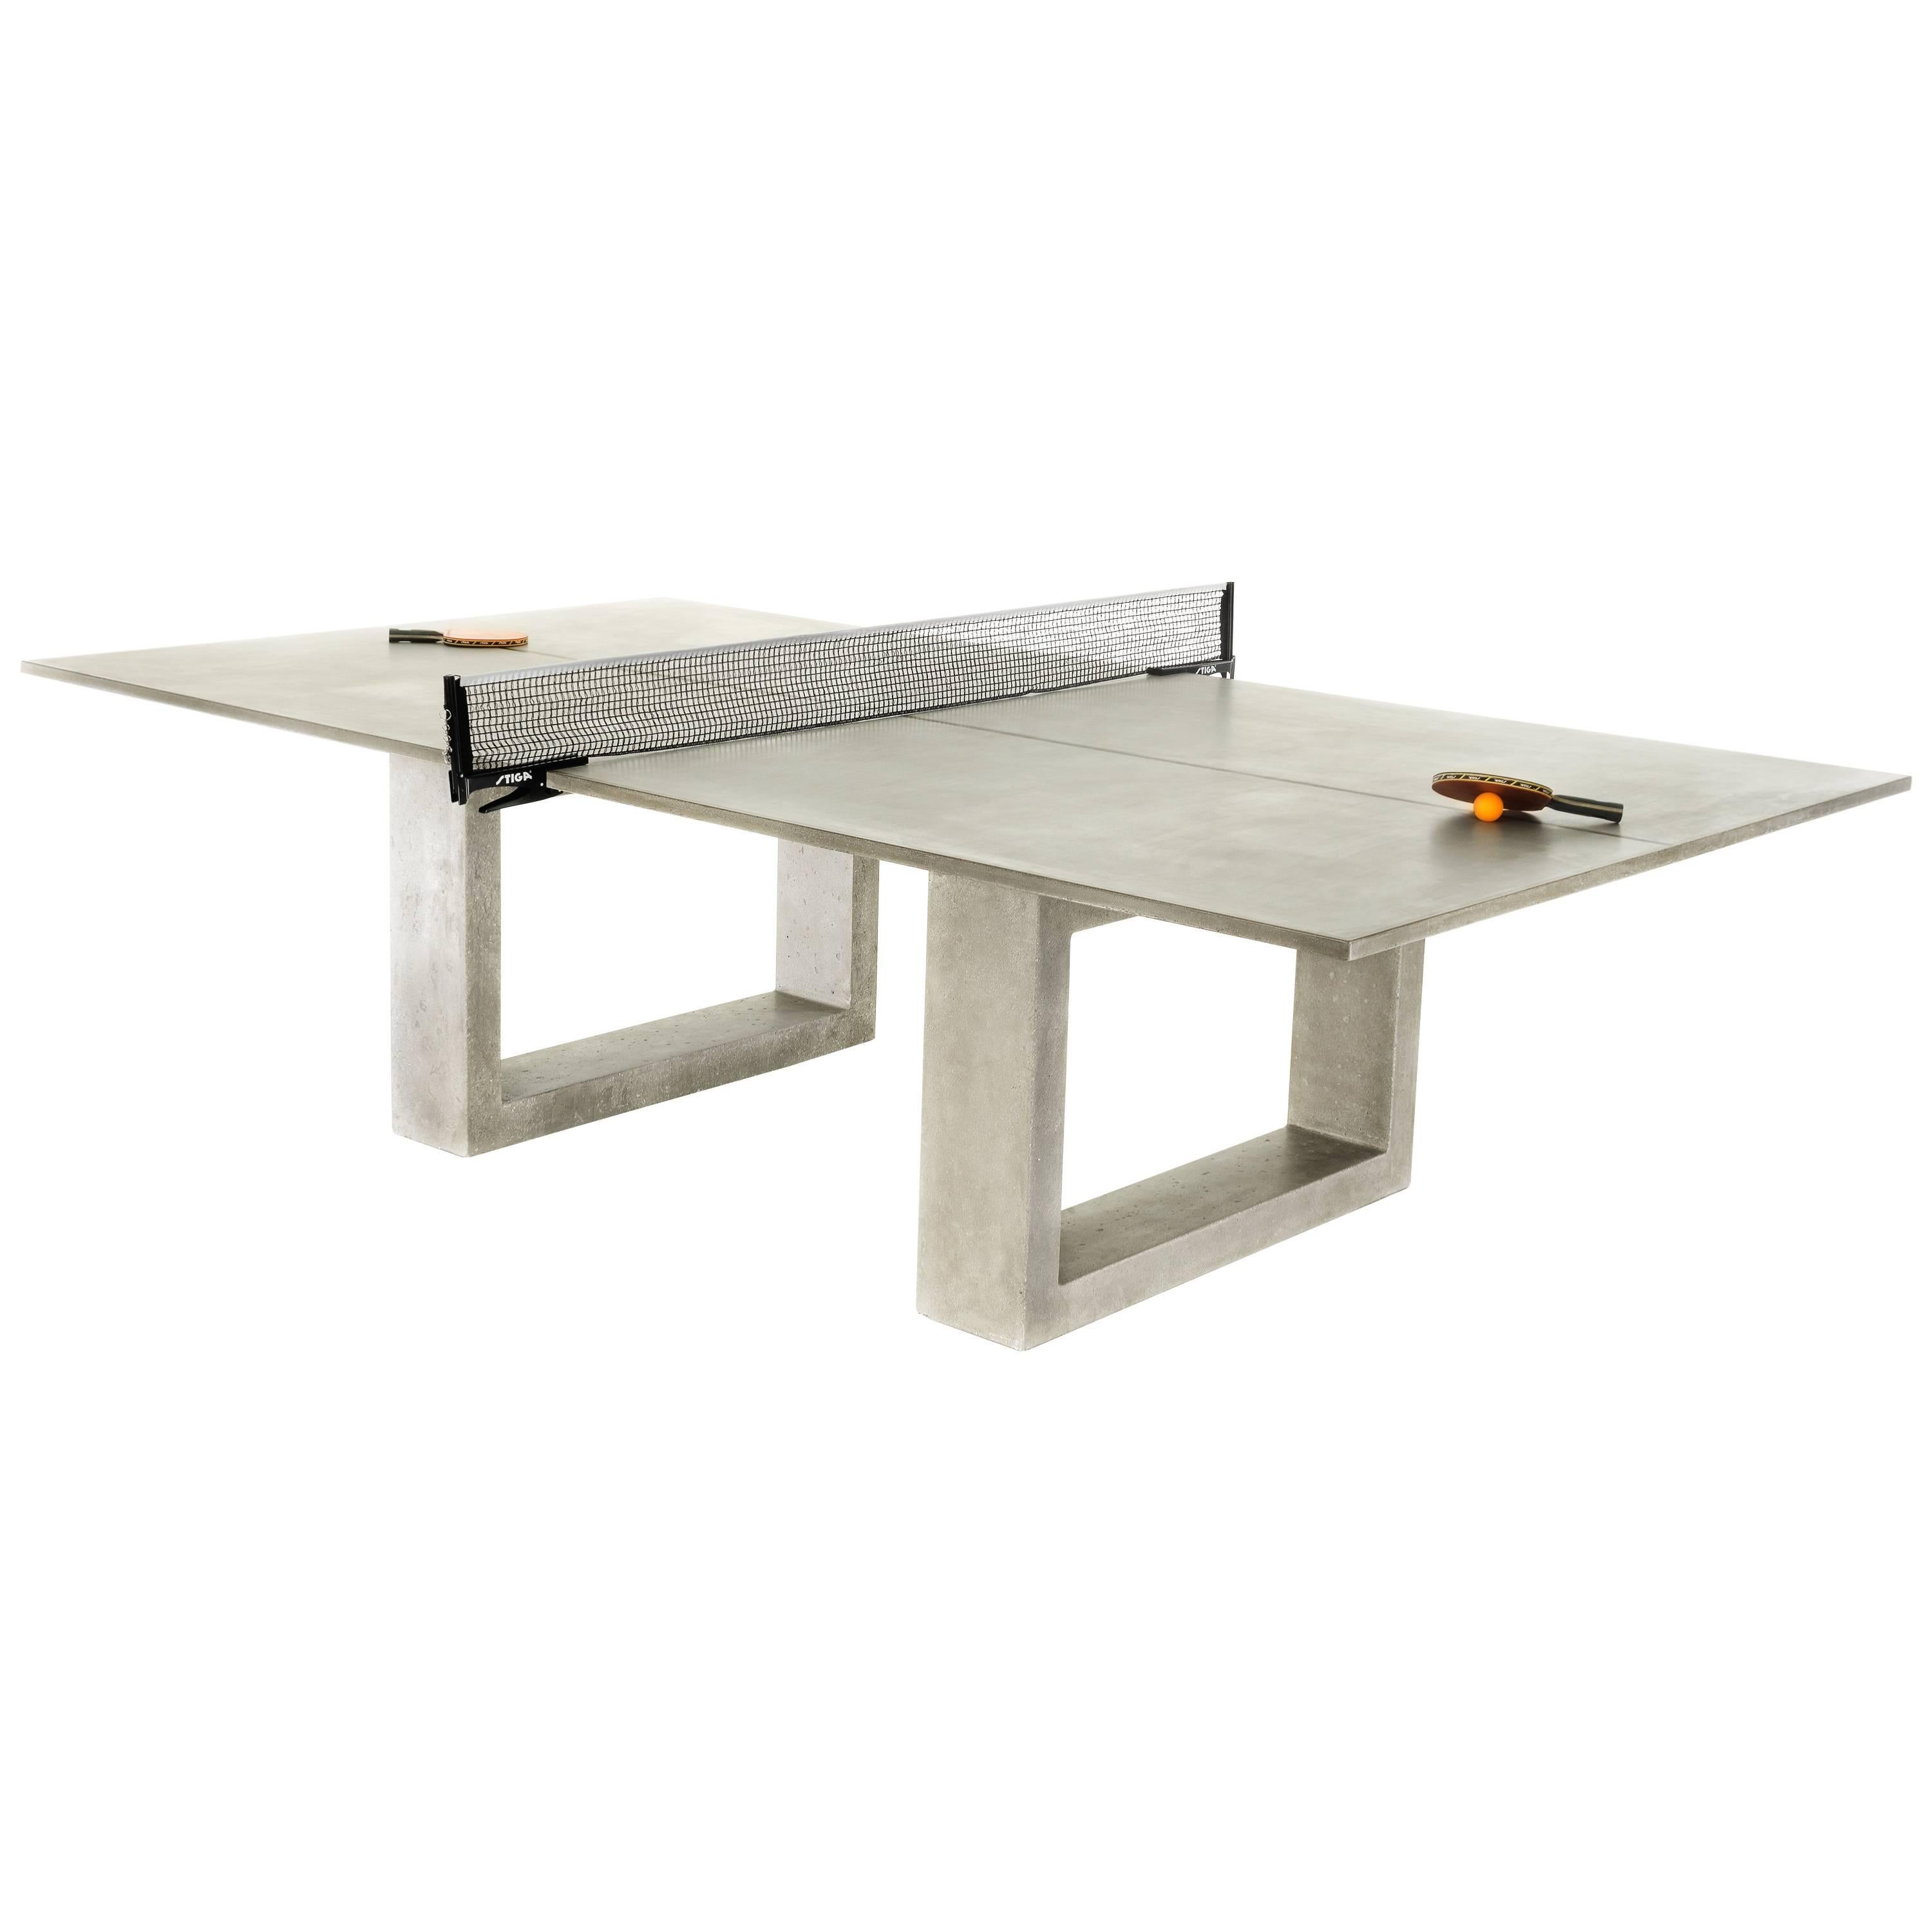 Table de ping-pong en béton James de Wulf, finition gris clair, disponible maintenant